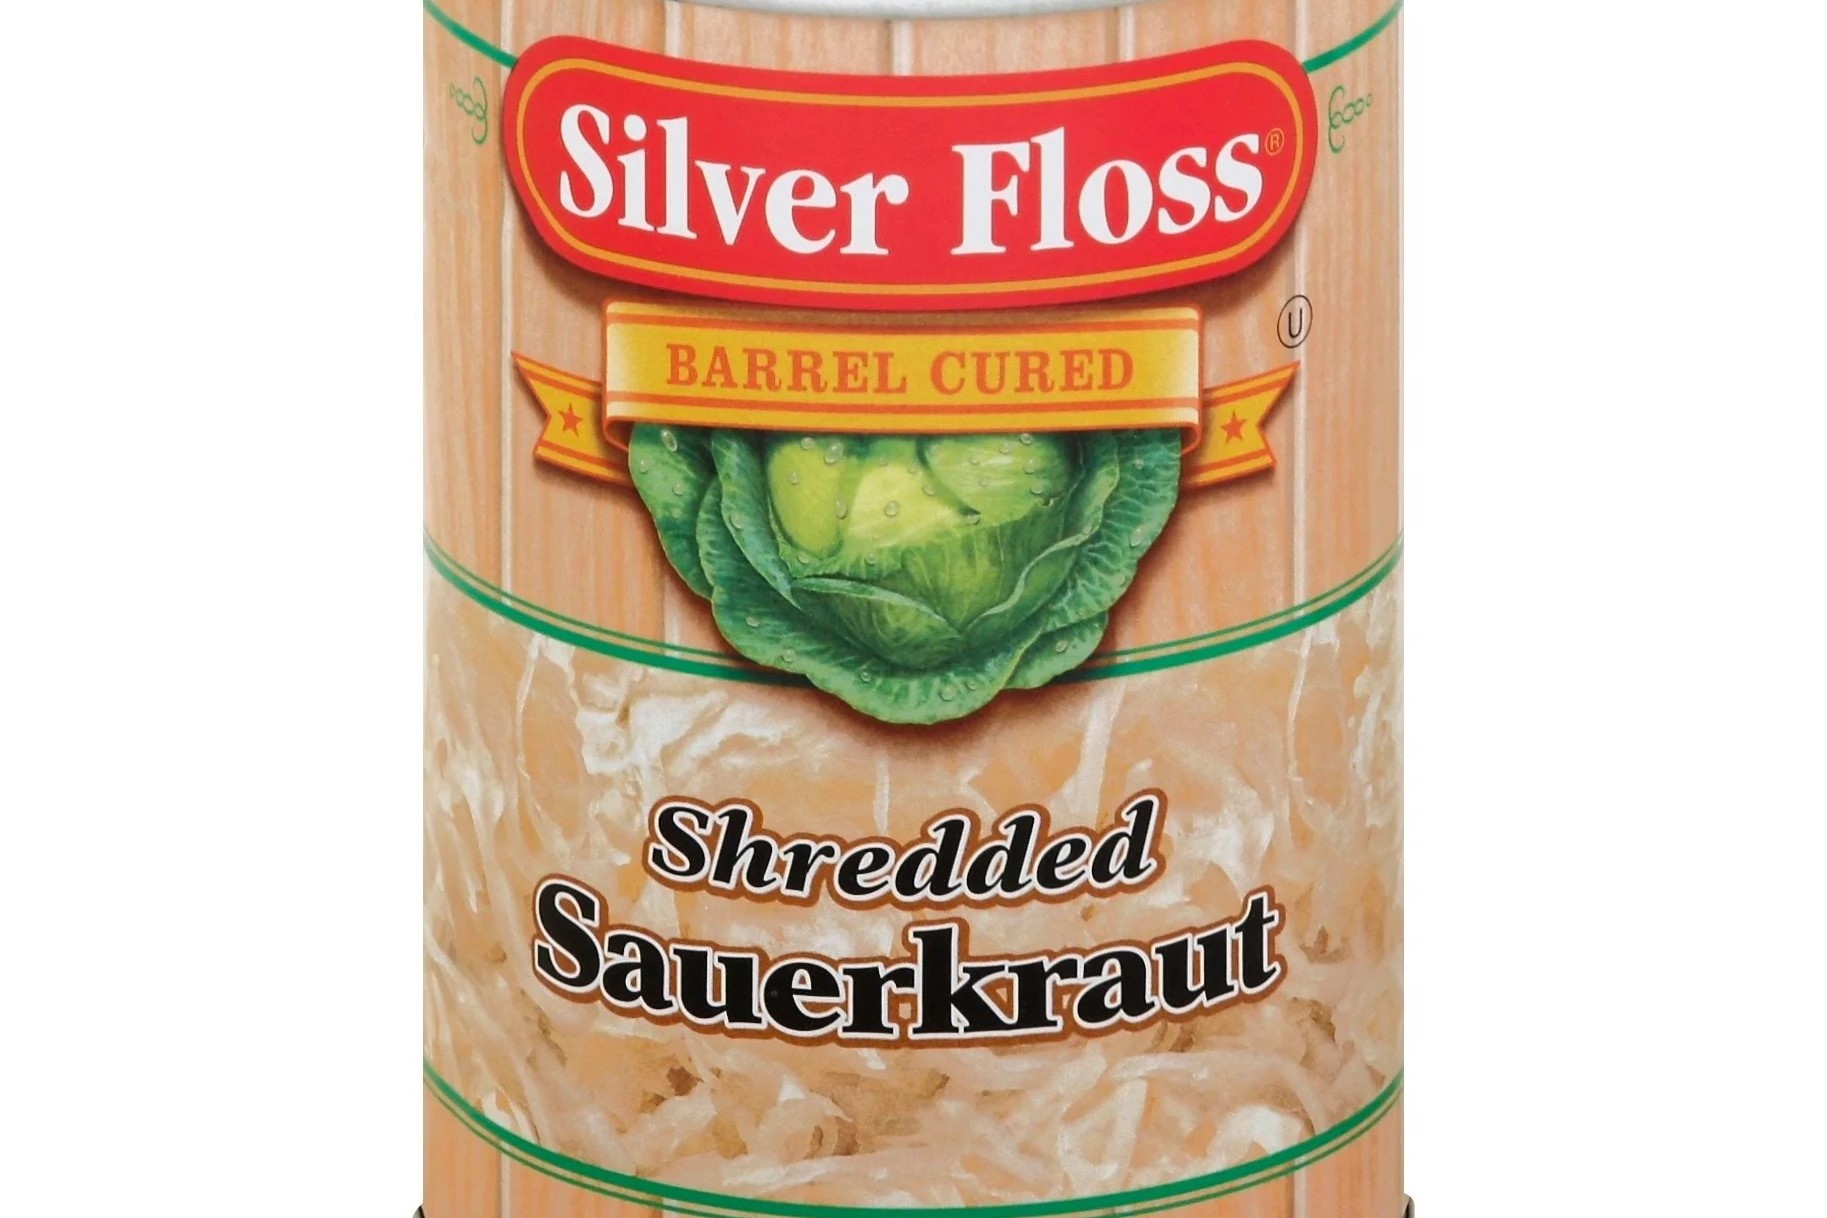 11-silver-floss-sauerkraut-nutrition-facts